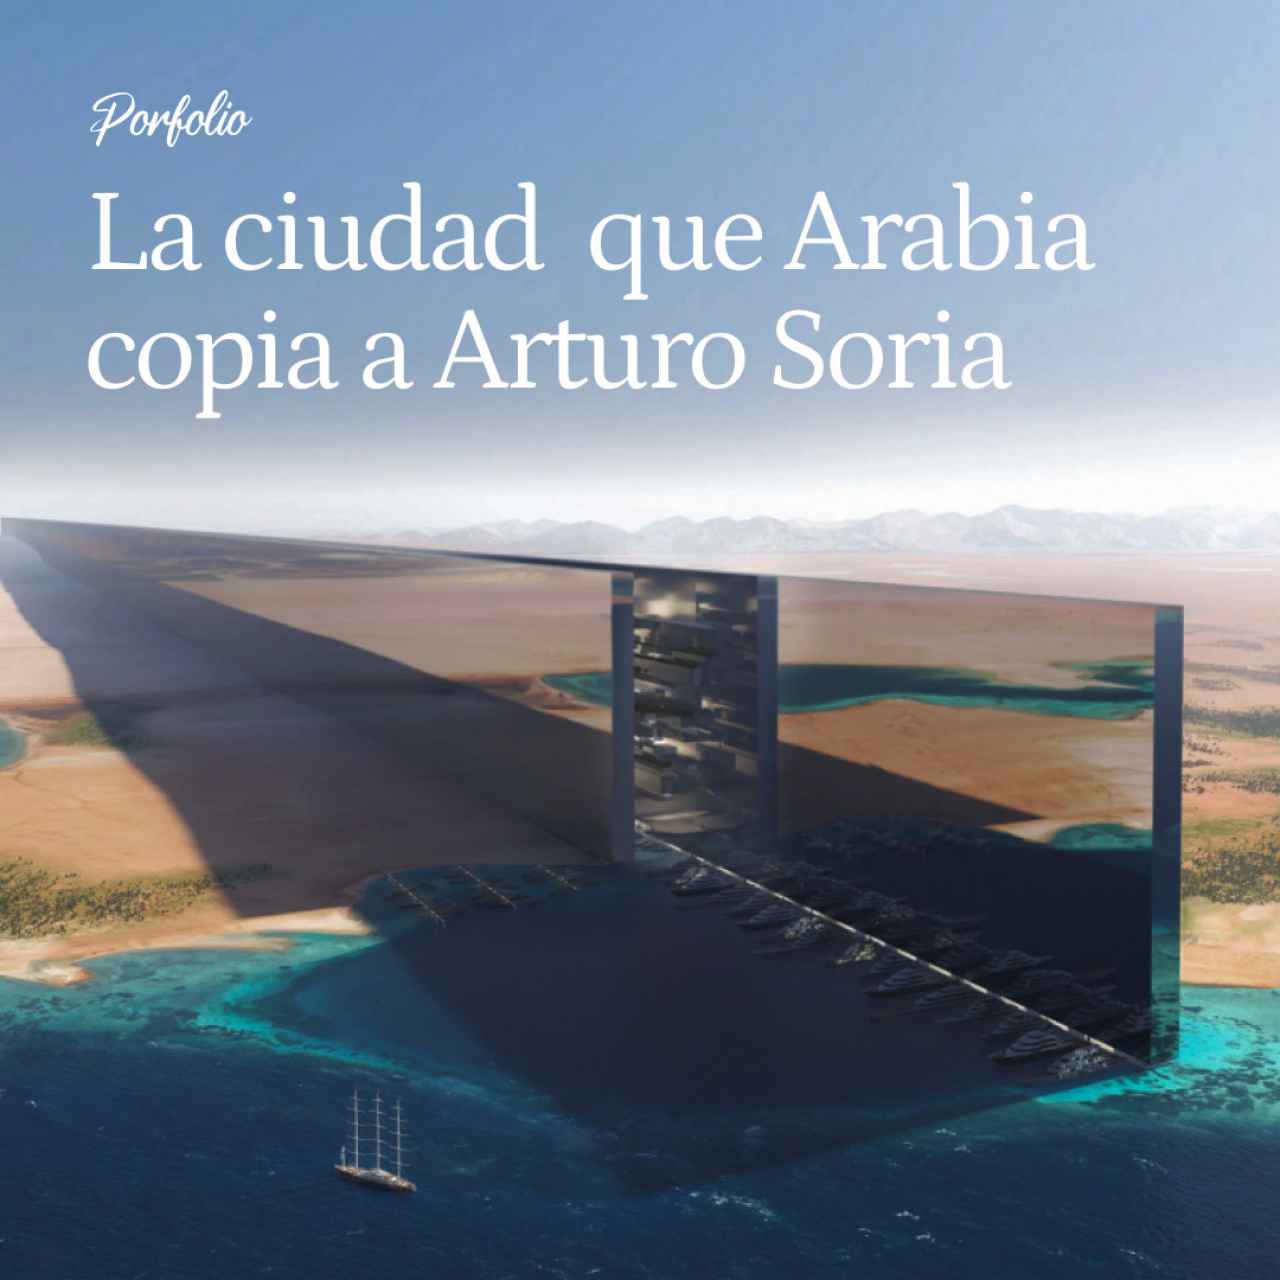 La Ciudad Lineal que Arabia Copia a Arturo Soria: 9 Millones de Personas en el Espacio de Alcorcón